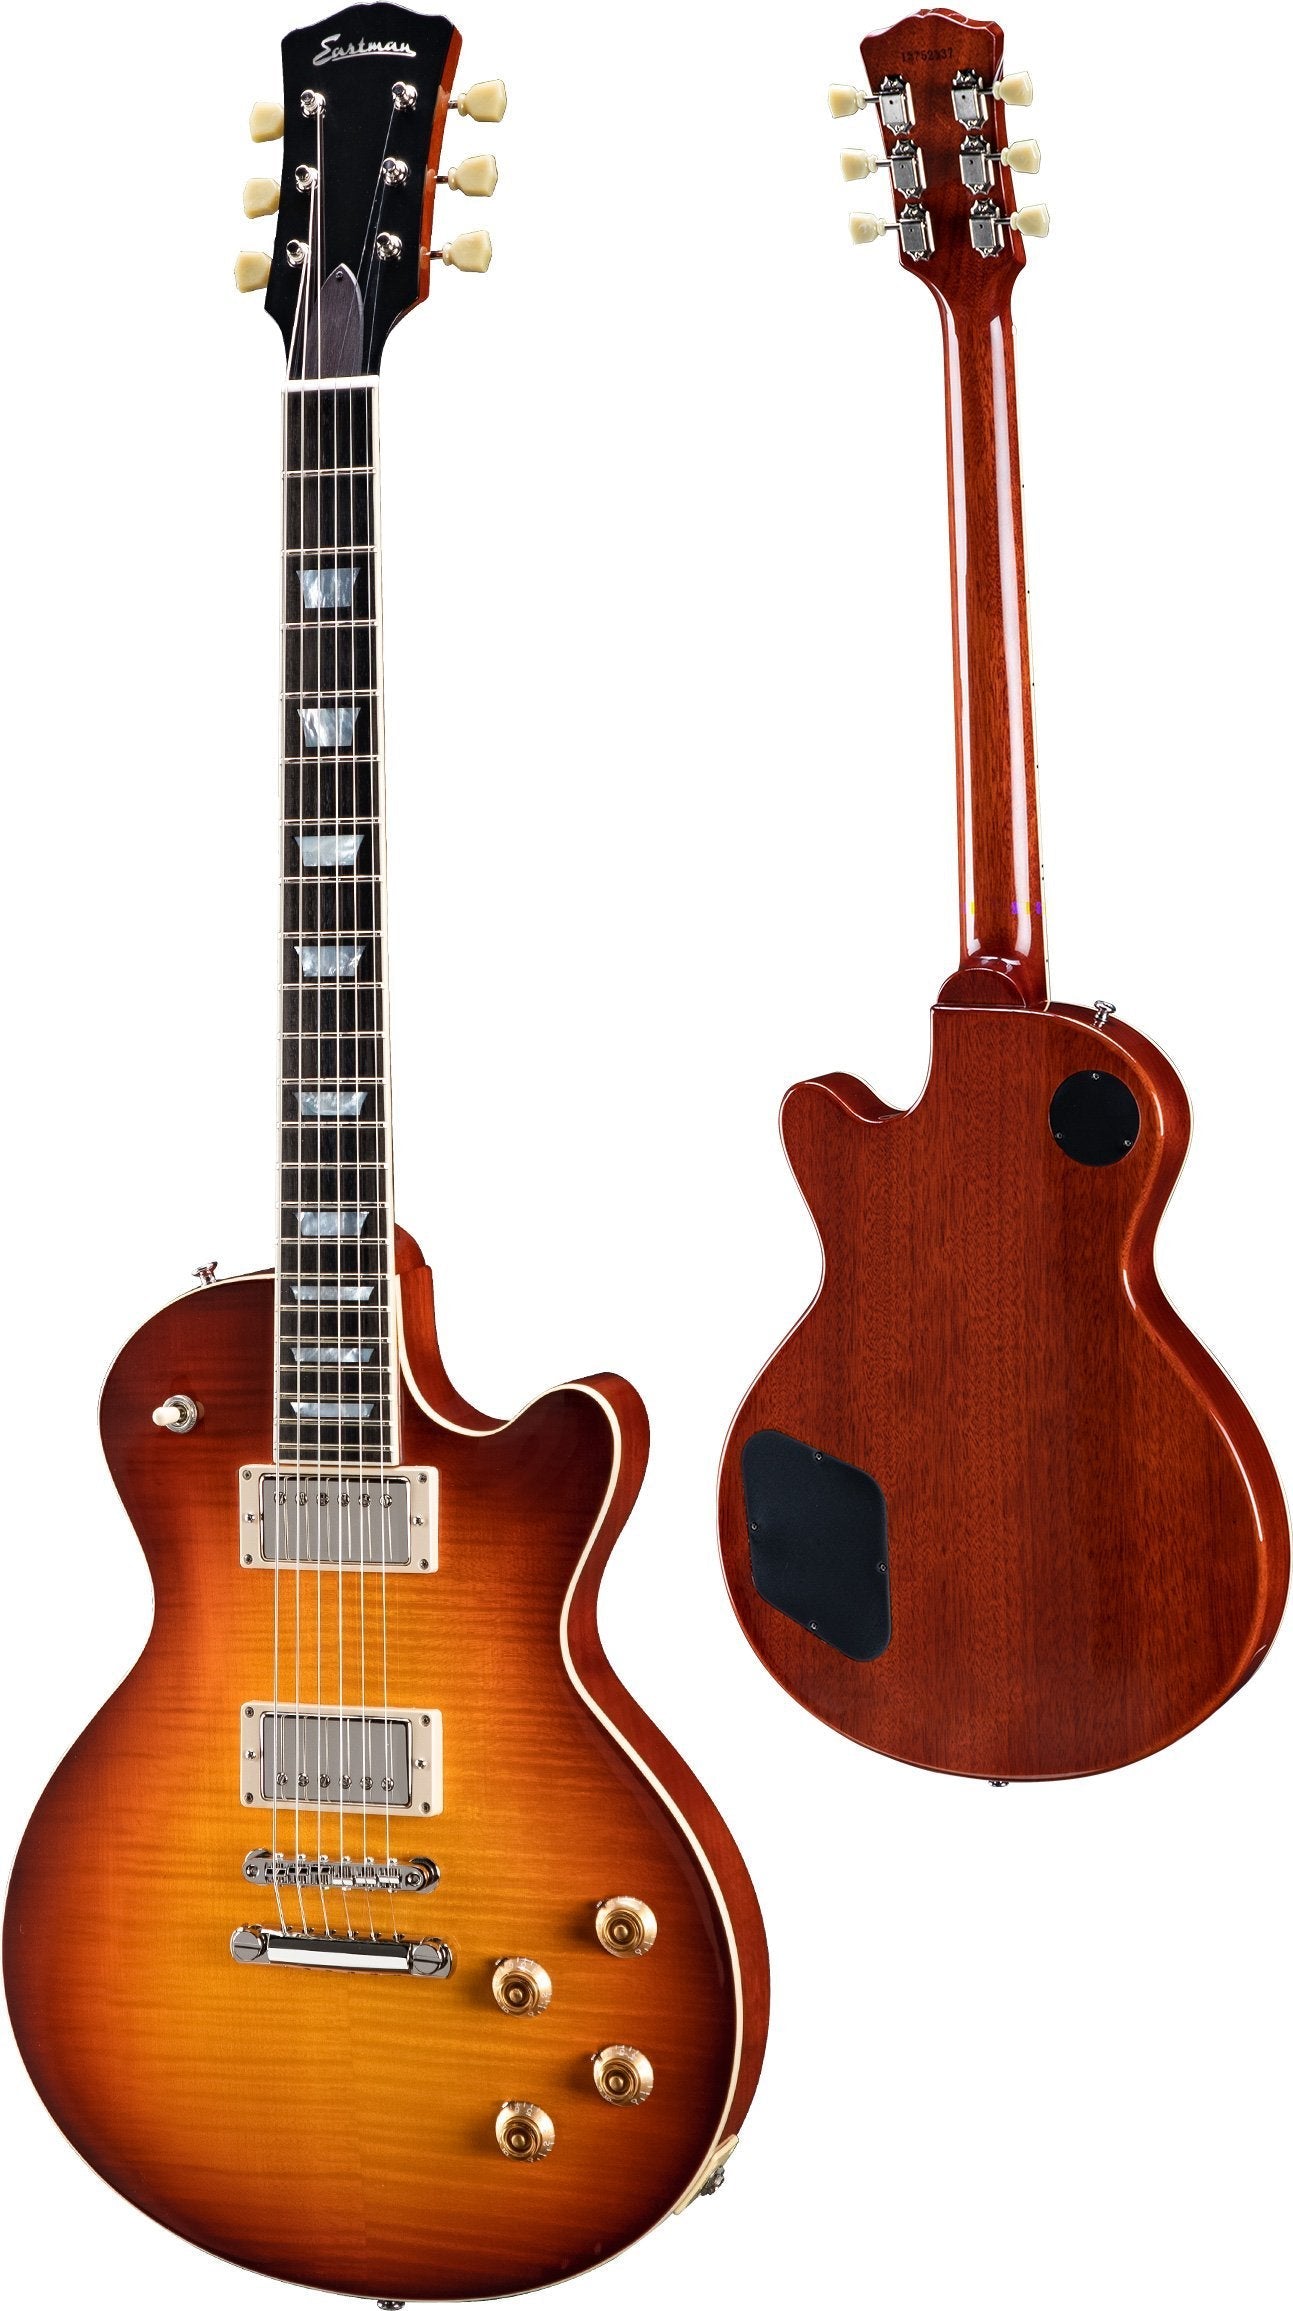 Eastman SB59 RB (Redburst), Electric Guitar for sale at Richards Guitars.